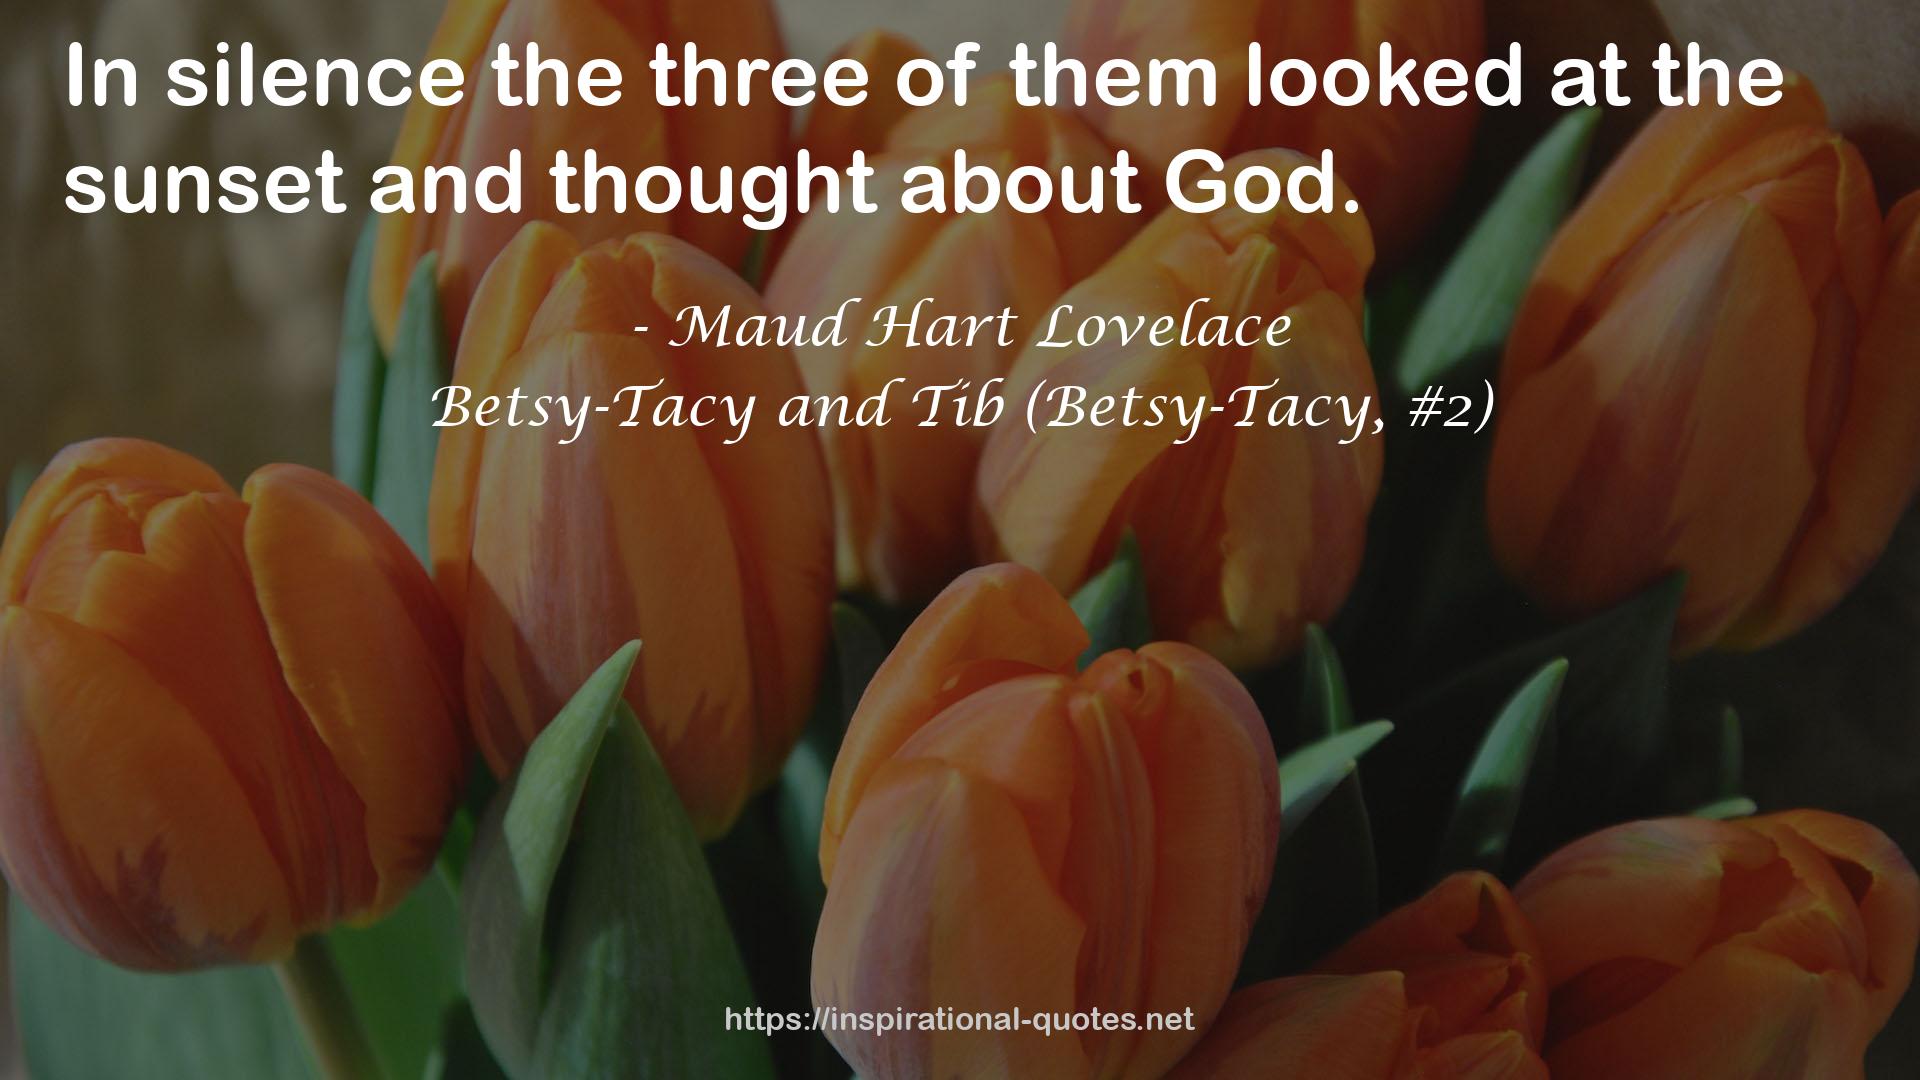 Betsy-Tacy and Tib (Betsy-Tacy, #2) QUOTES